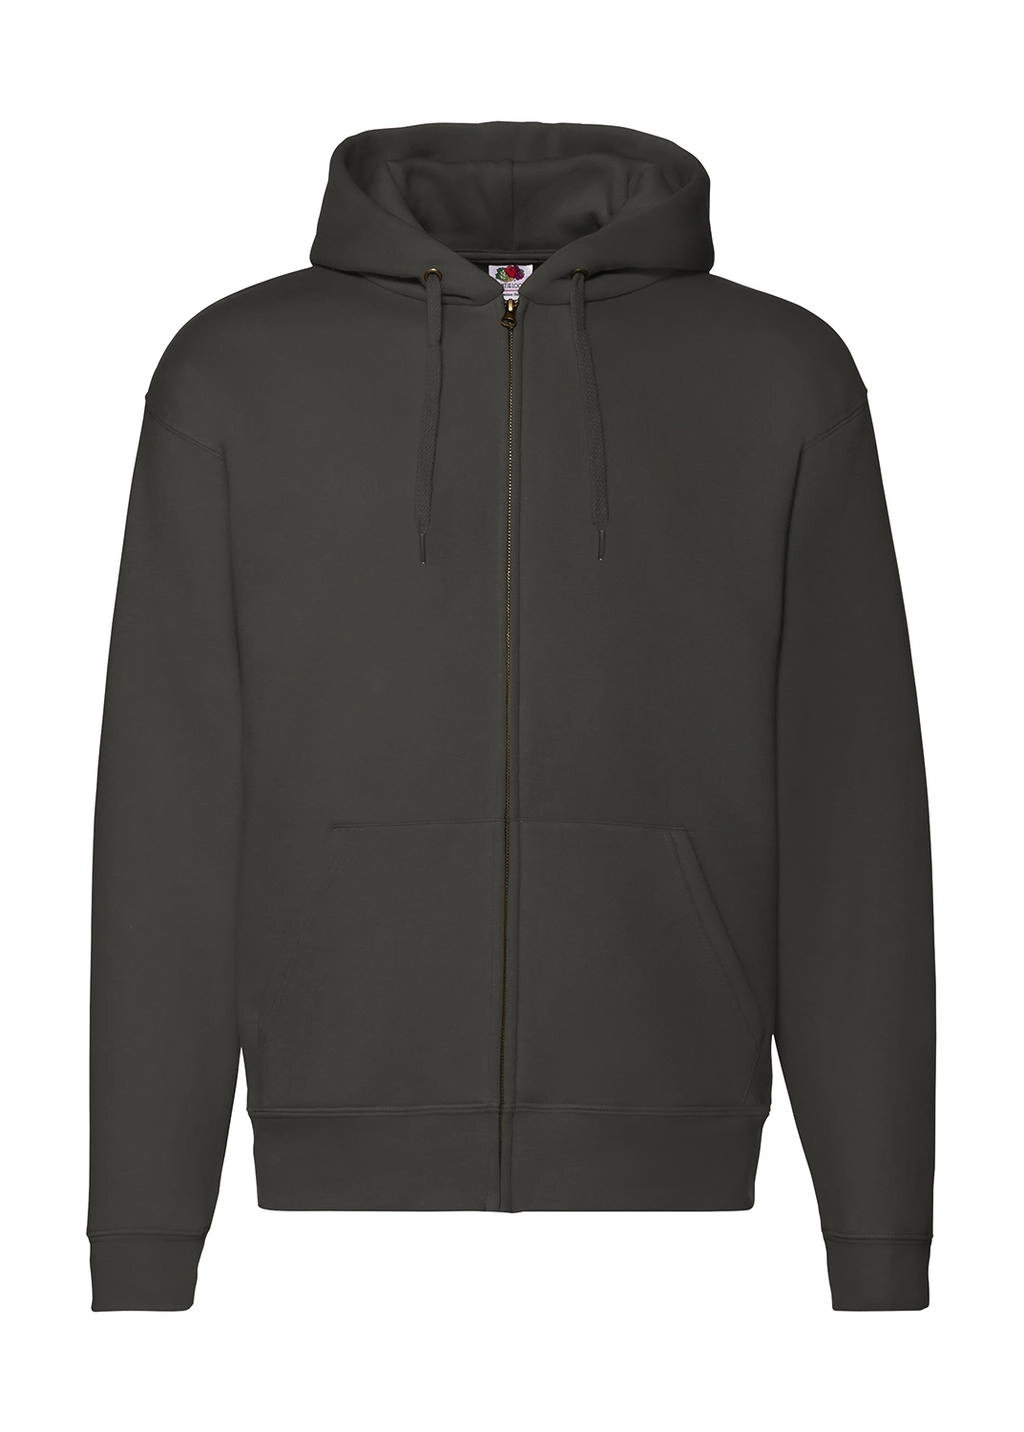 Premium Hooded Zip Sweat zum Besticken und Bedrucken in der Farbe Charcoal mit Ihren Logo, Schriftzug oder Motiv.